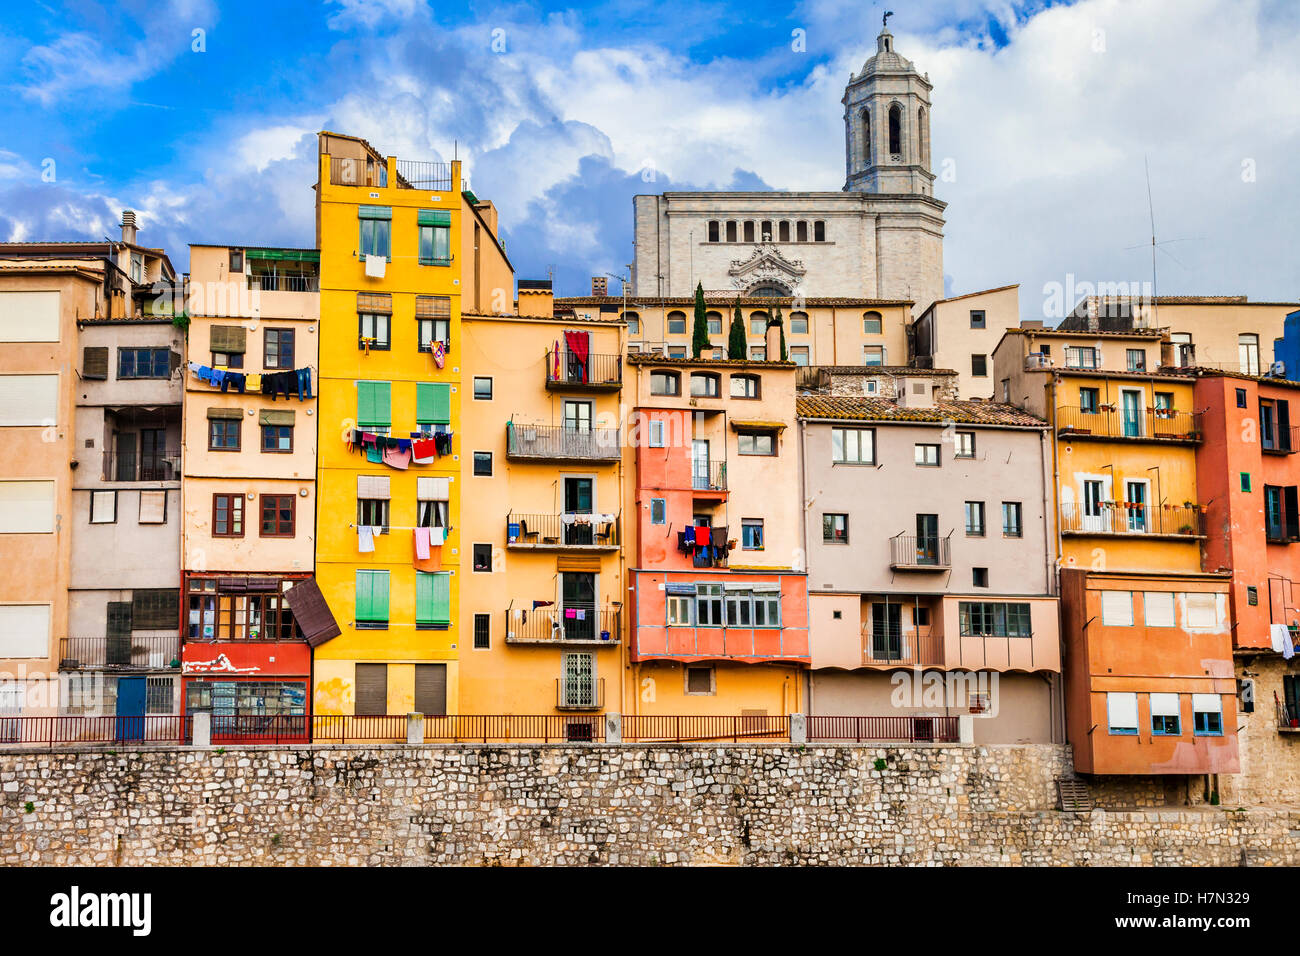 Girona - schöne bunte Stadt in Katalonien, touristische Attraktion. Spanien Stockfoto